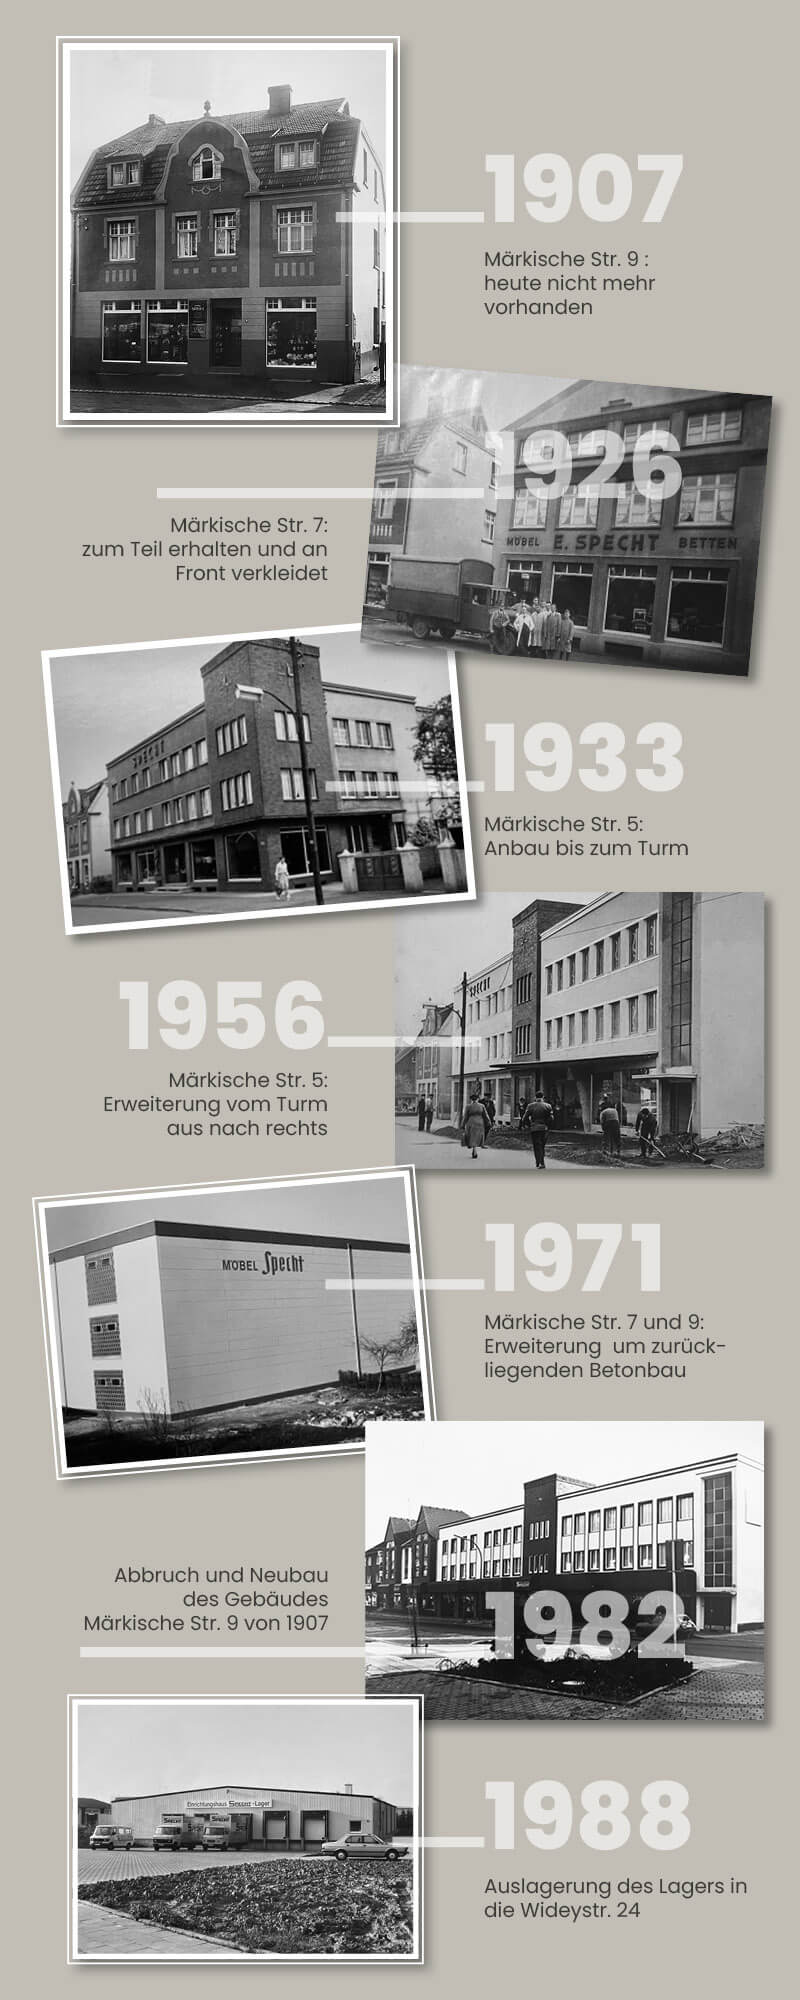 Übersicht des Gebäudes im Wandel mit Fotos und Jahreszahlen